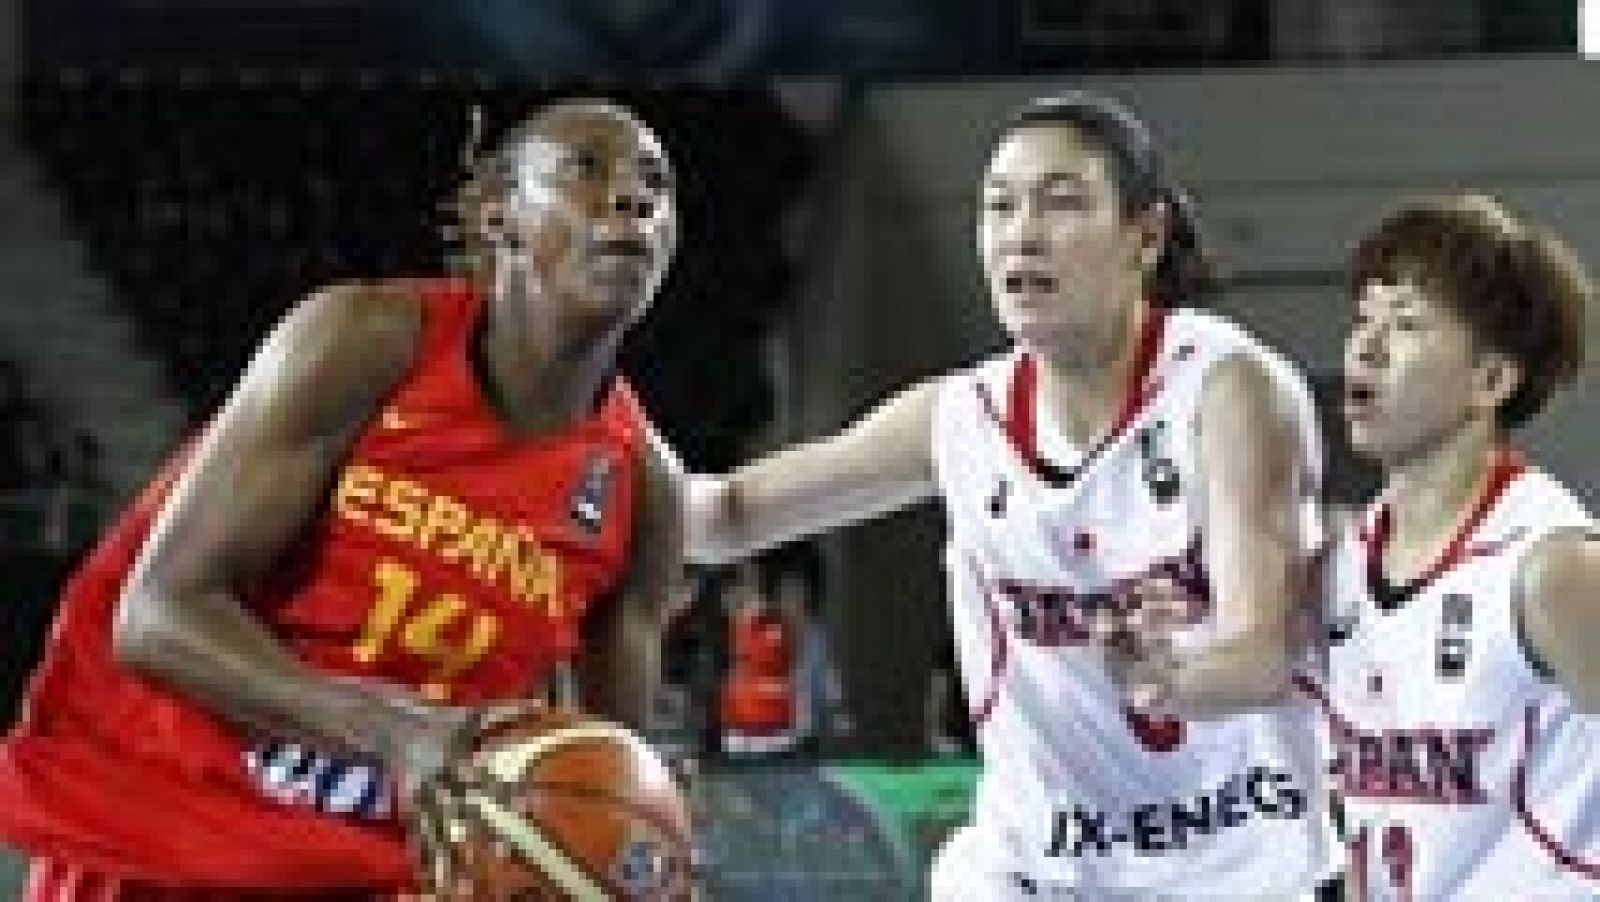 La selección española femenina de baloncesto superó con nota el primer partido del Mundial de Turquía al ganar, por 50-74 a Japón, con Sancho Lyttle, Alba Torrens, Marta Xargay y Anna Cruz en el capítulo de las destacadas.